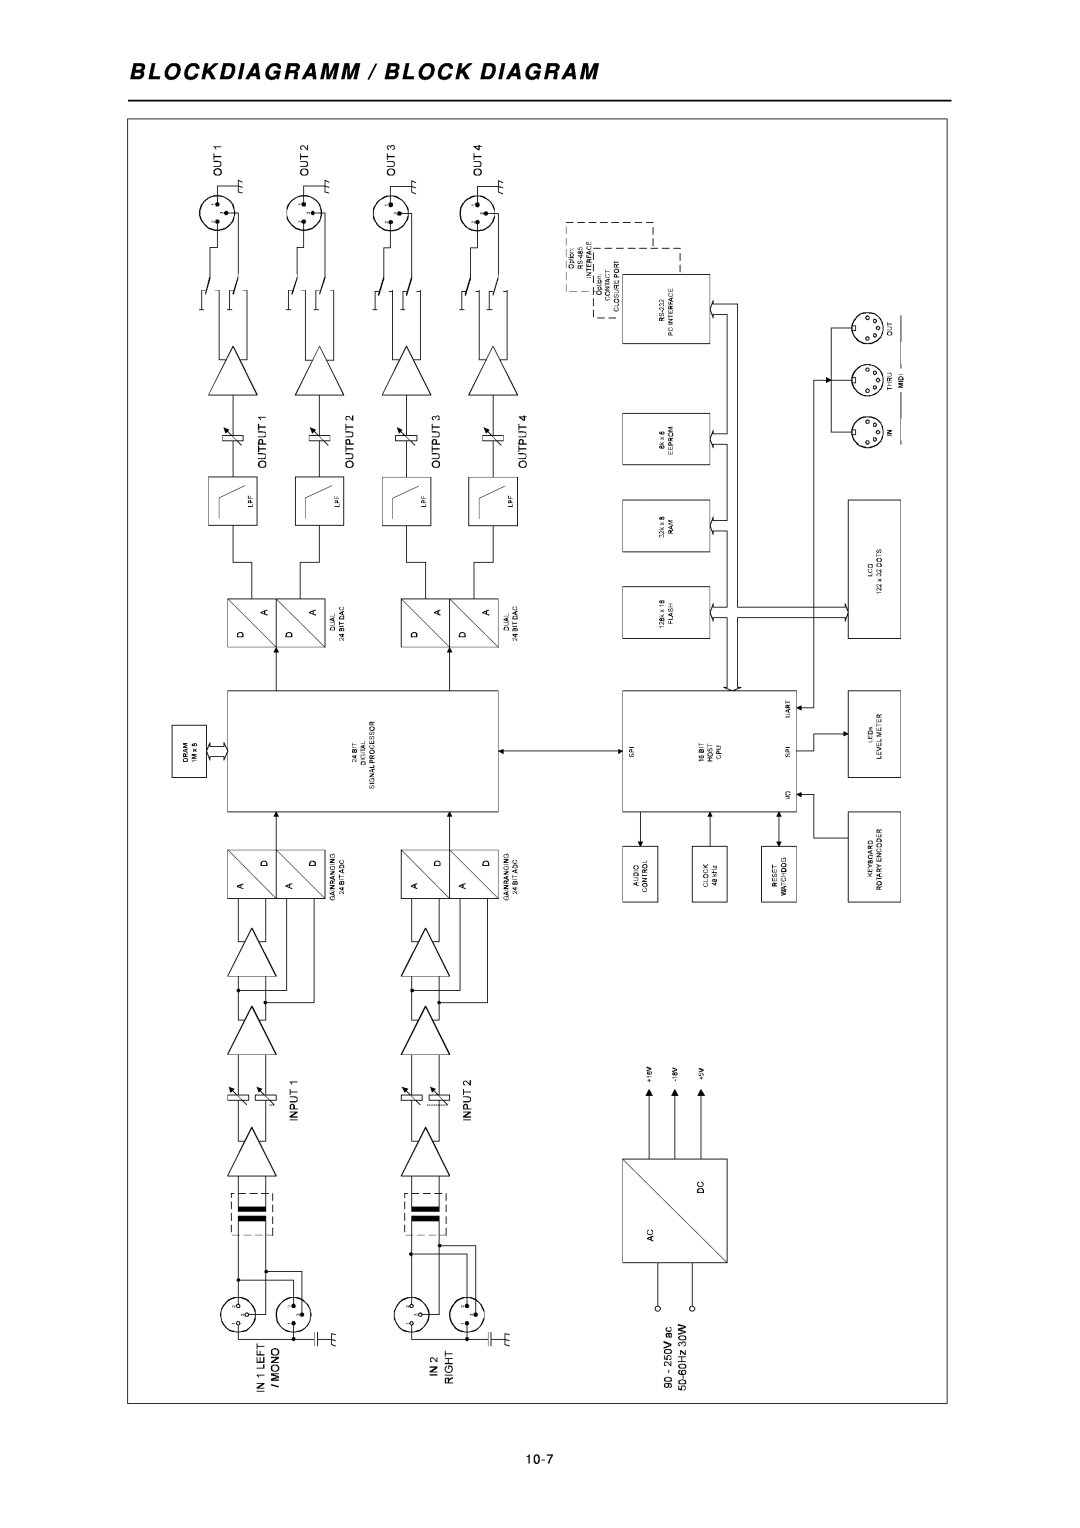 Dynacord DSP 244 owner manual Blockdiagramm / Block Diagram, 10-7 